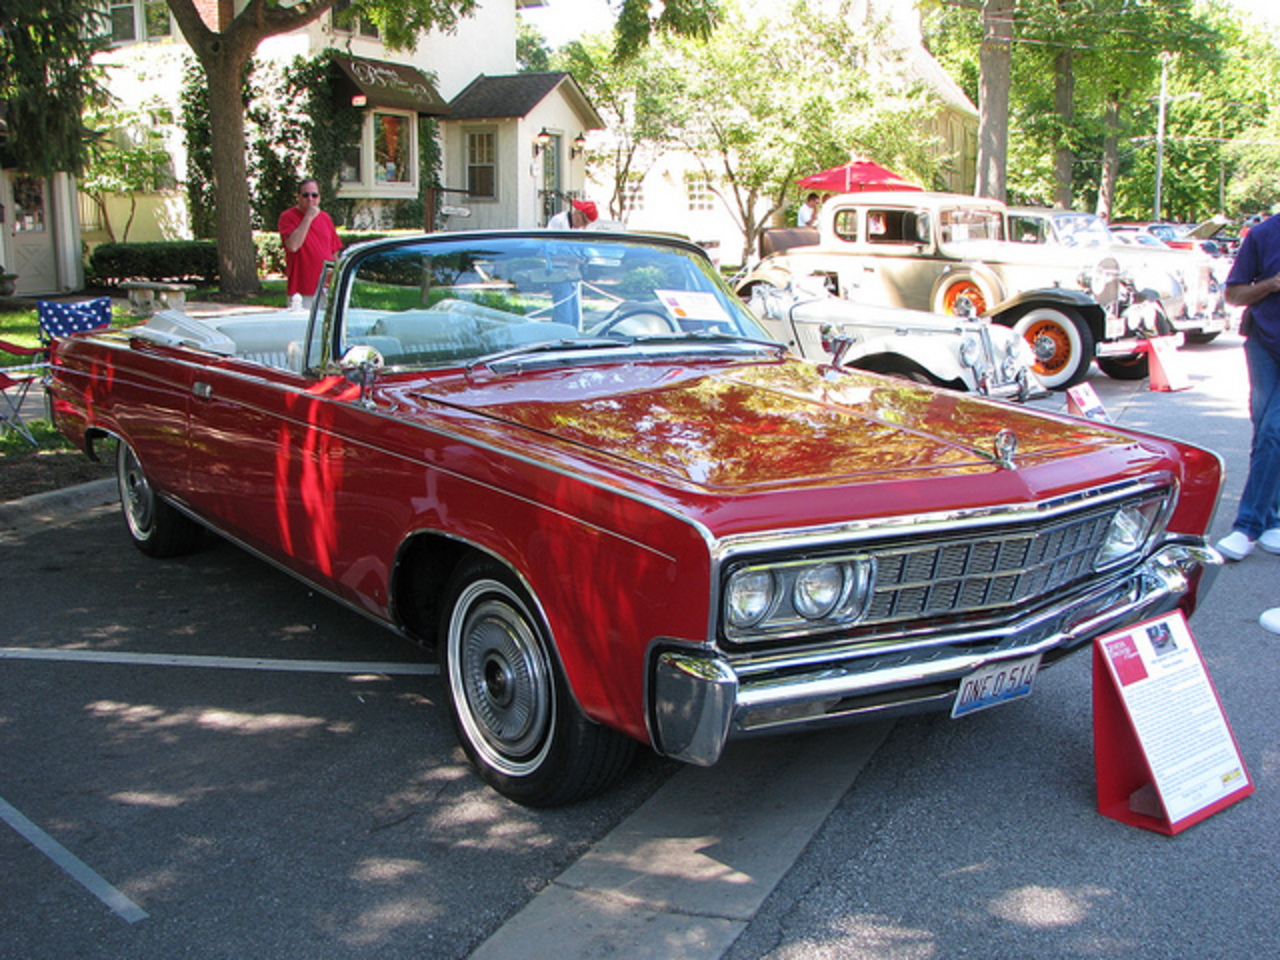 1966 Imperial Crown convertible / Flickr - Partage de photos!